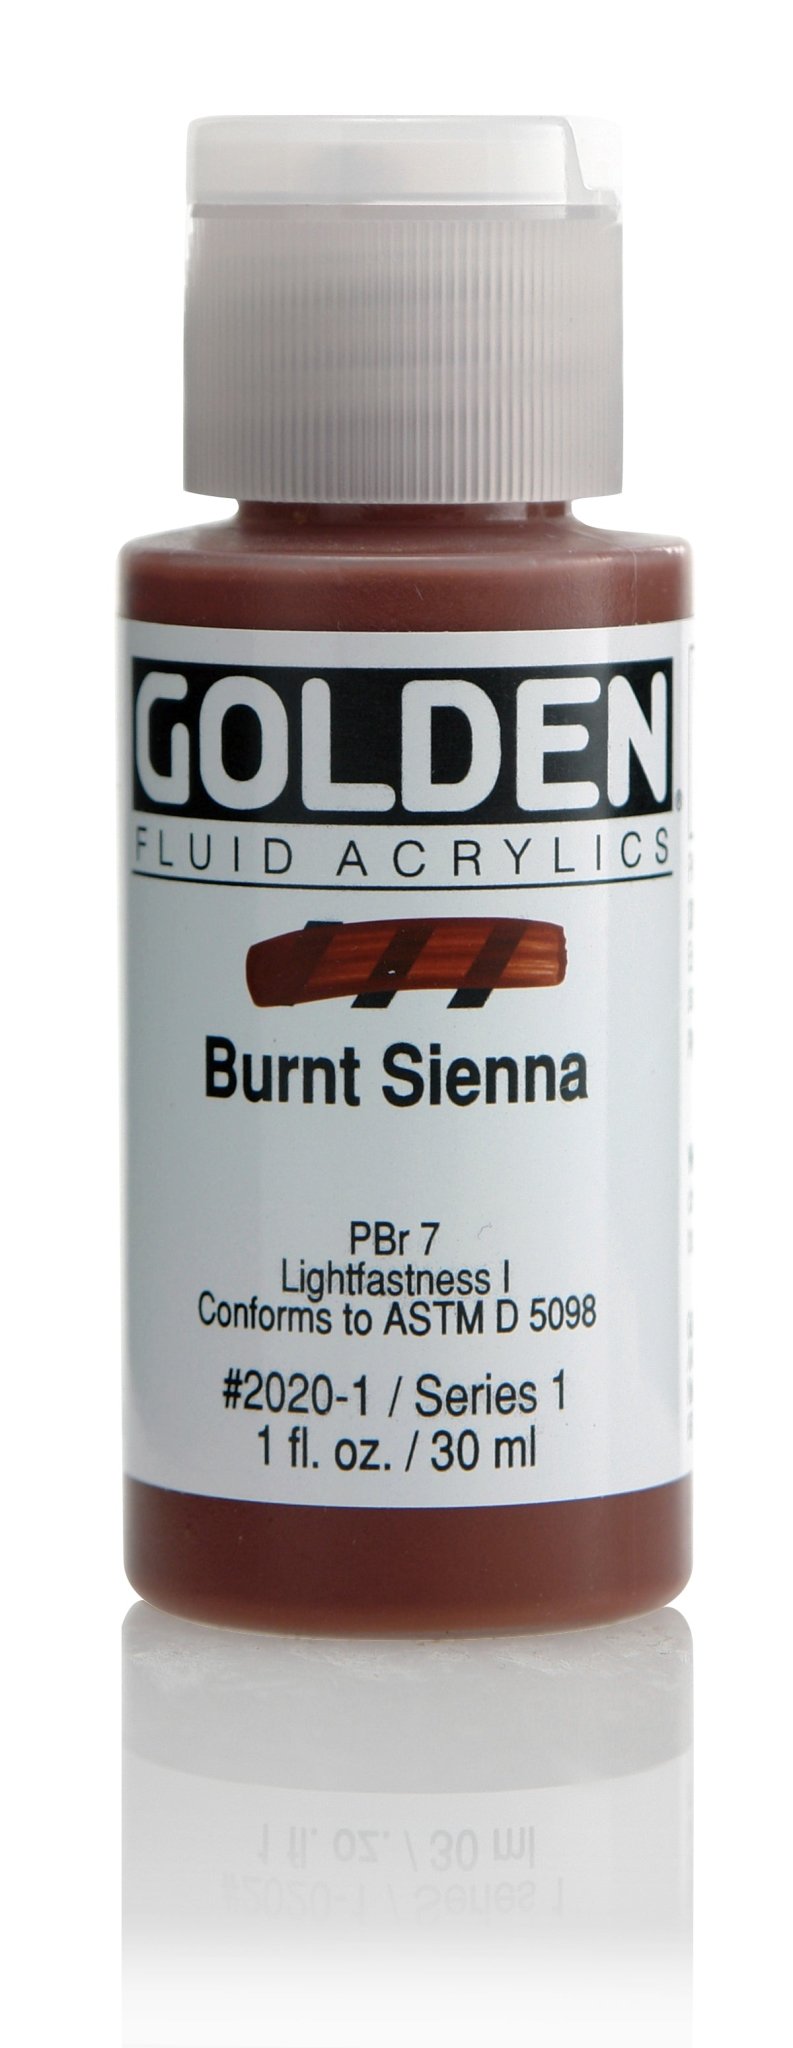 Golden Fluid Acrylics - Burnt Sienna - 30ml - Create A Little Magic (Pty) Ltd